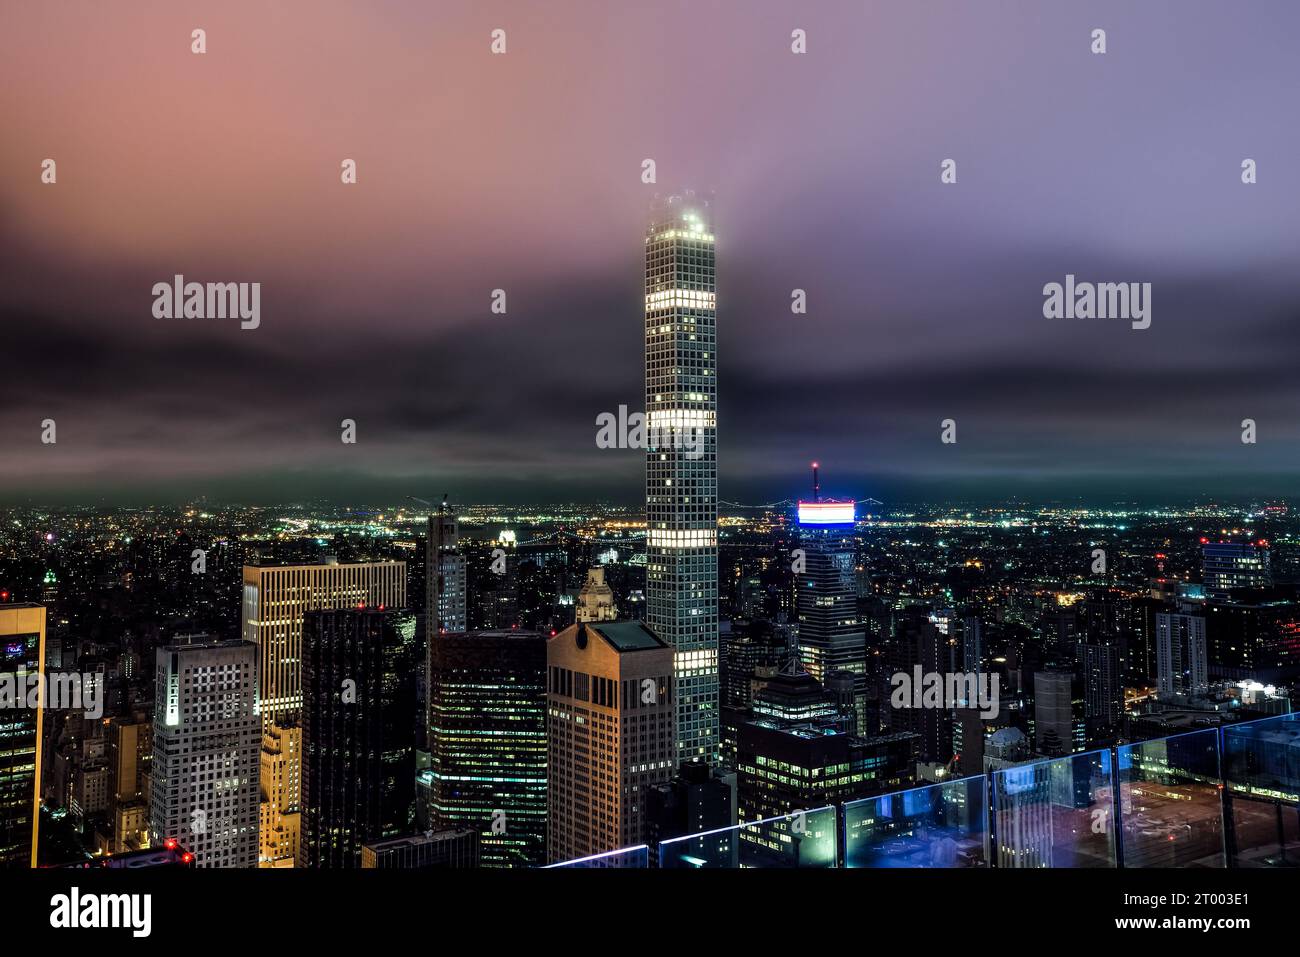 Vista notturna da Top of the Rock (30 Rockefeller Plaza) a 432 Park Avenue e gli edifici nel centro di Manhattan - New York City Foto Stock